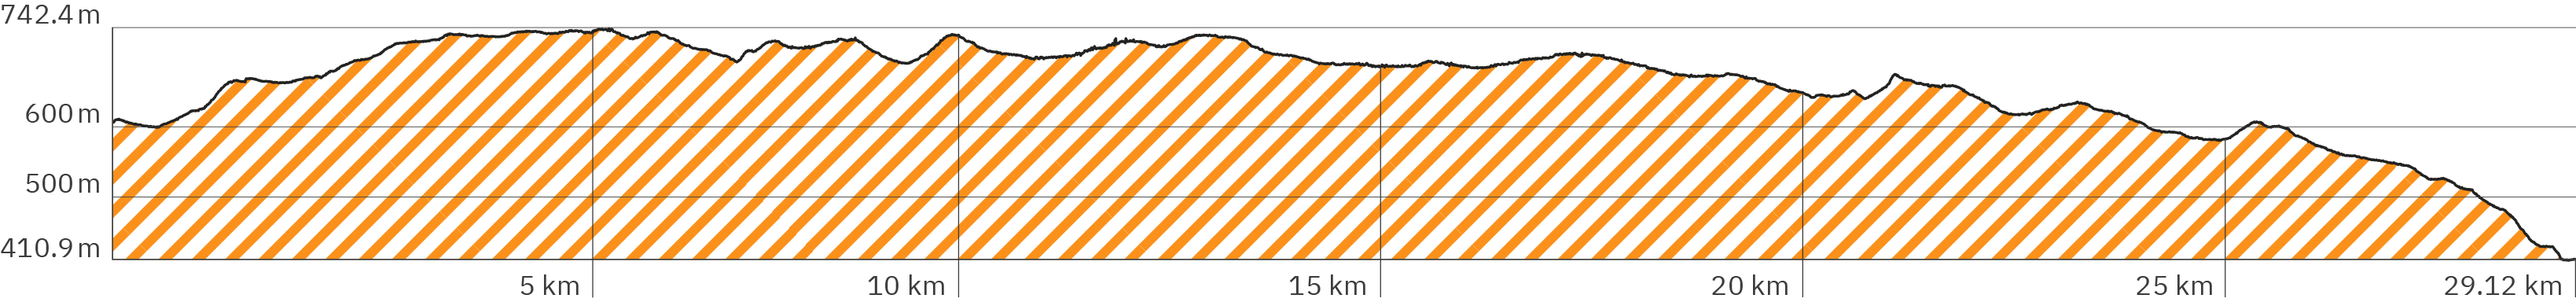 Höhenverlauf der 6. Rennsteig-Etappe – Länge 29,12 km – Start bei ca. 600 m, zu Beginn bergauf bis auf ca. 742 Höhenmeter, dann leichte Aufs und Abs, ab der zweiten Hälfte leicht absteigend mit kurzen Aufs und Abs ab Kilometer 20 und stärker abfallend ab Kilometer 26 bis runter auf ca. 410 Meter beim Etappen-Ende – Farbe der Schraffur ist Orange analog zum angezeigten Wegverlauf in der obigen Google Map